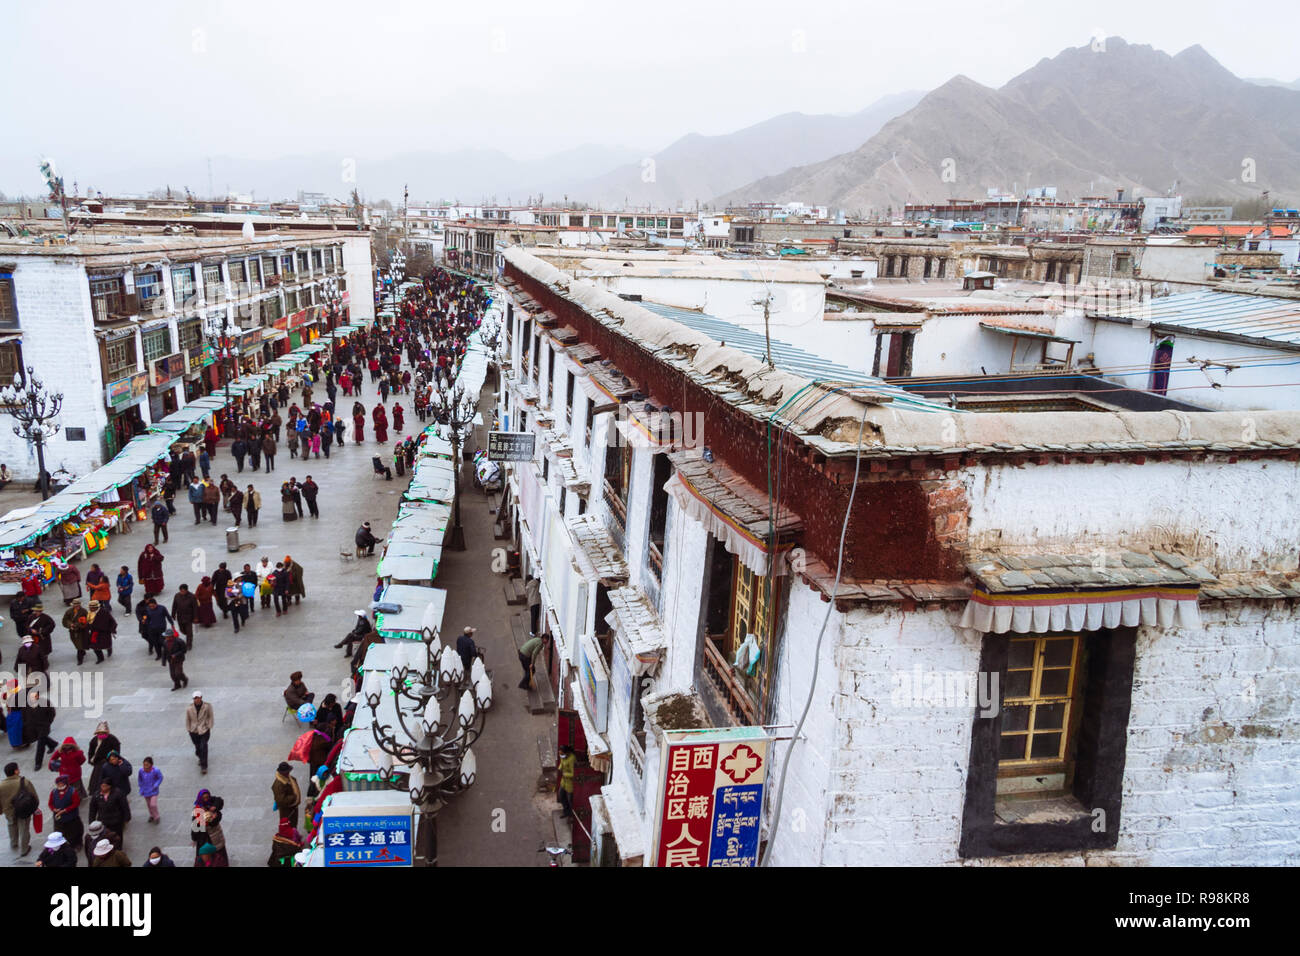 Lhasa, regione autonoma del Tibet, Cina : alto angolo di visione di persone camminando lungo una delle strade principali del quartiere Barkhor. Foto Stock